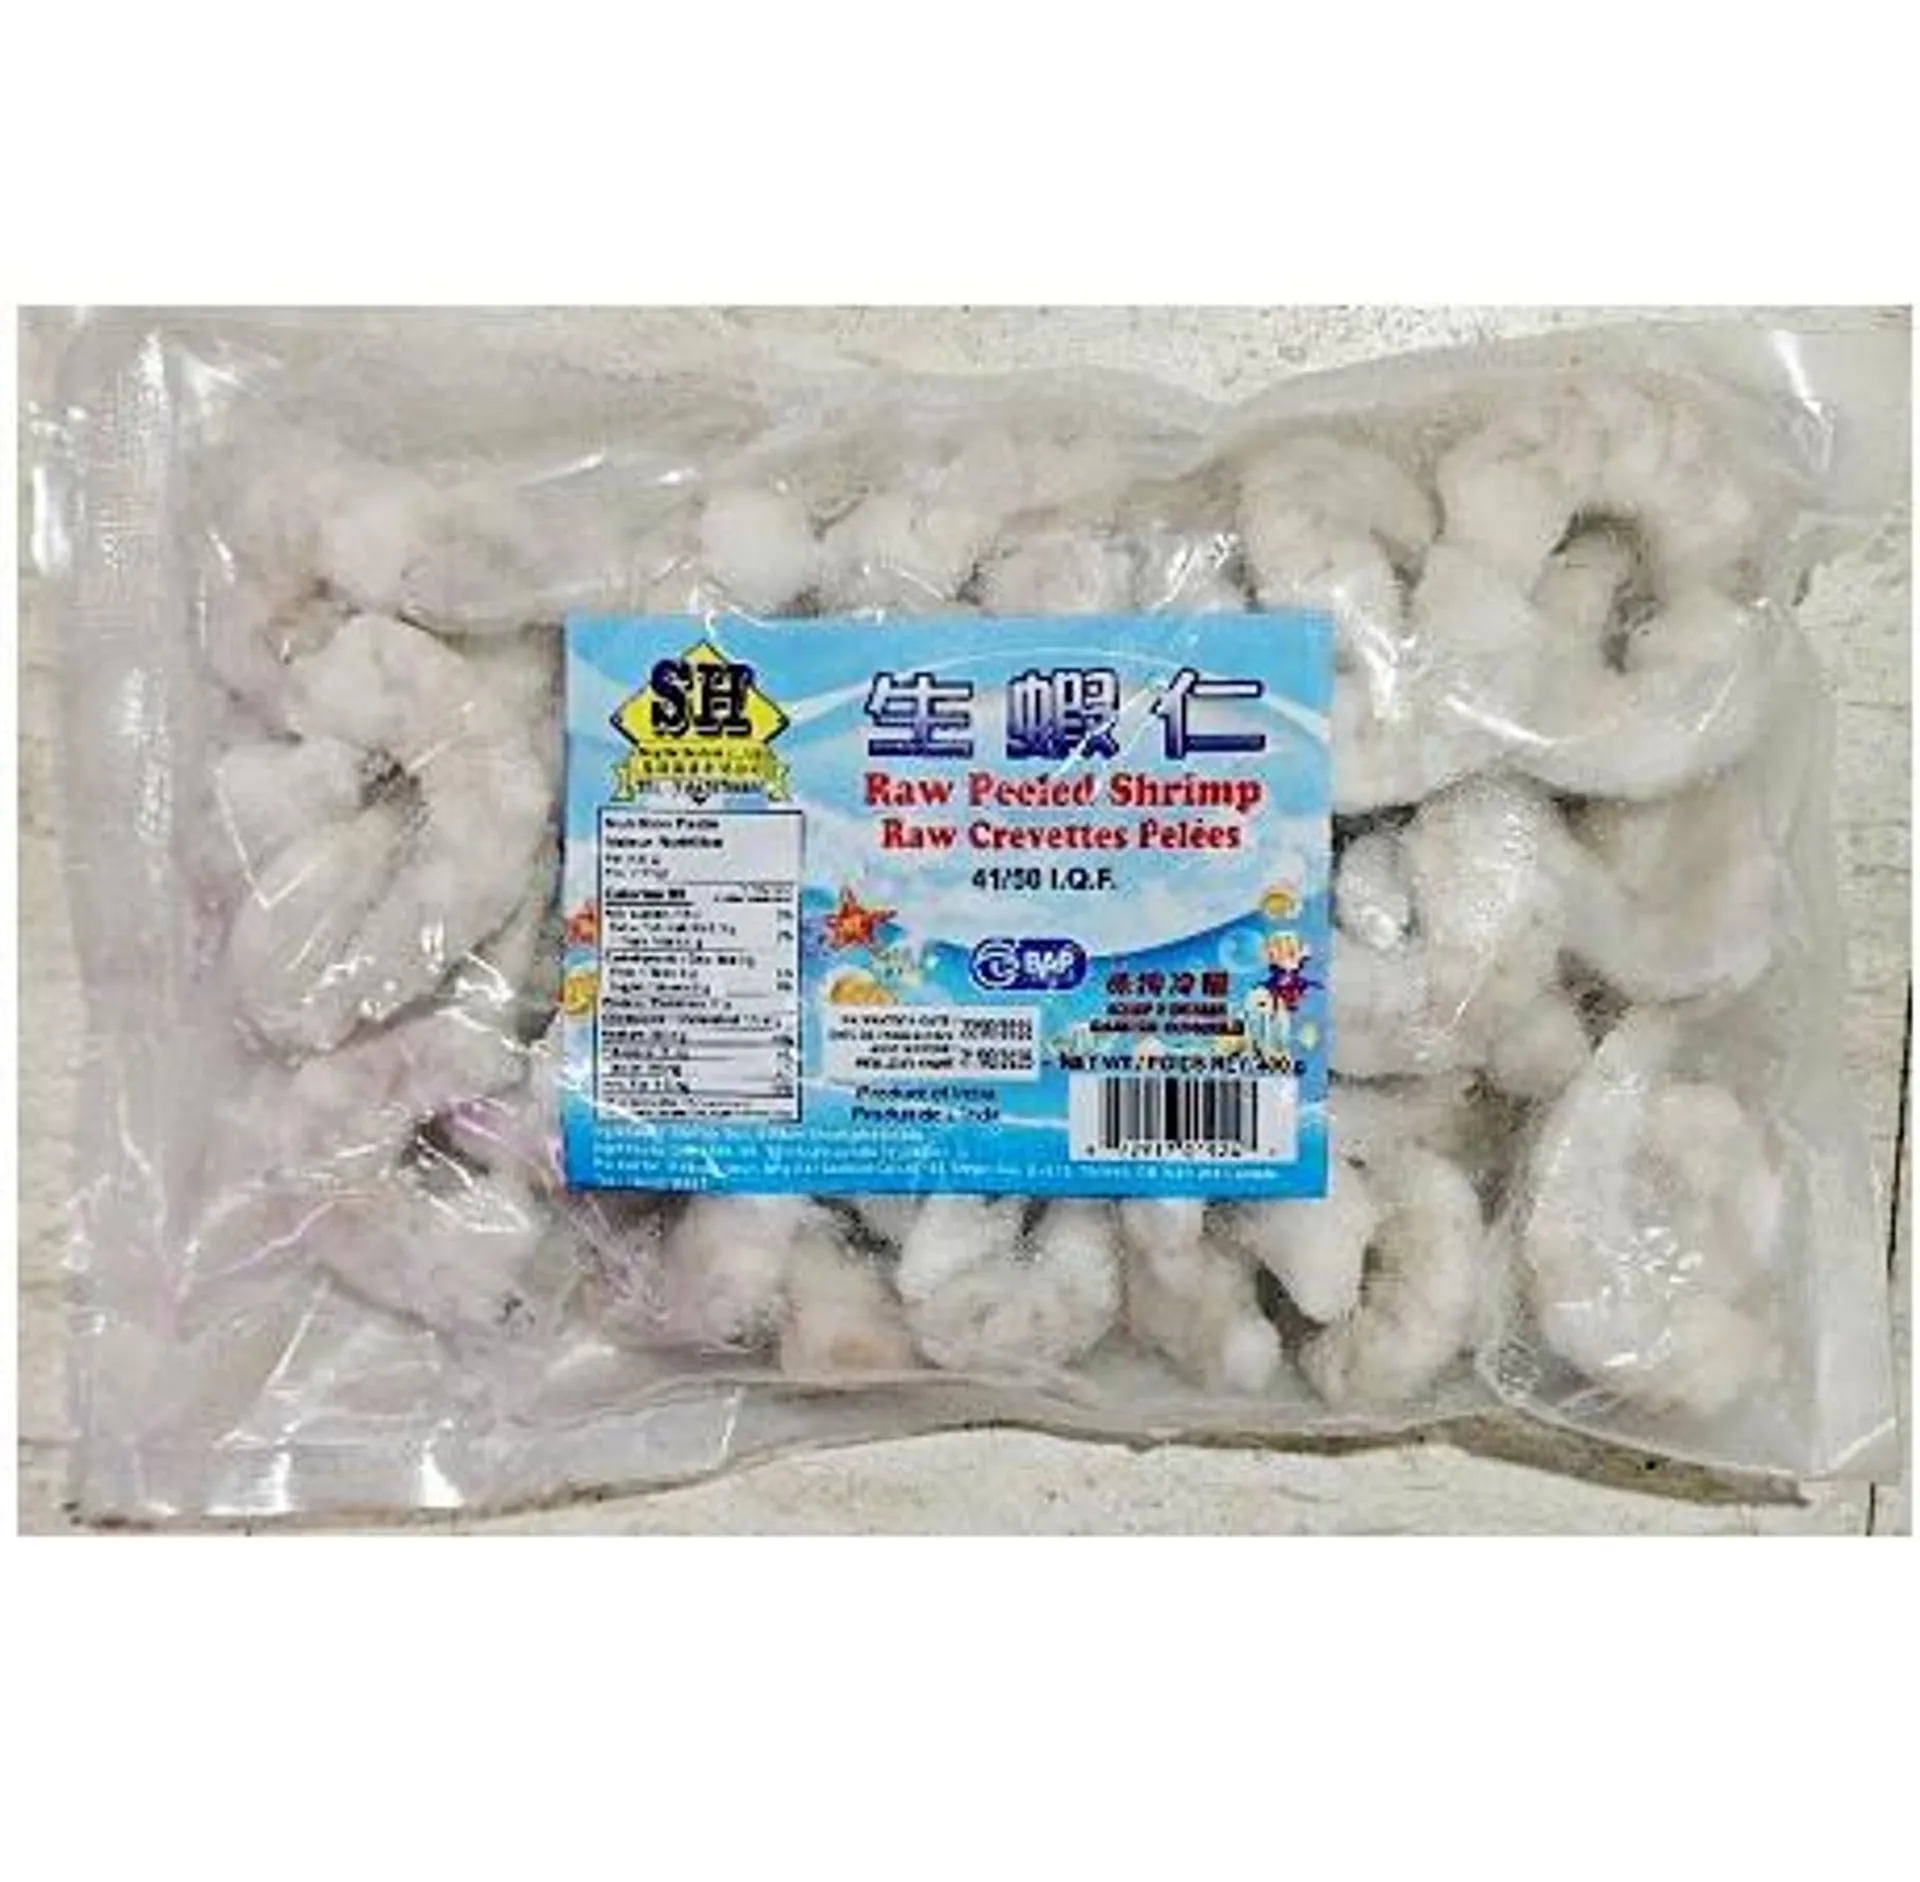 SH raw peeled shrimp 41/50 - 400g